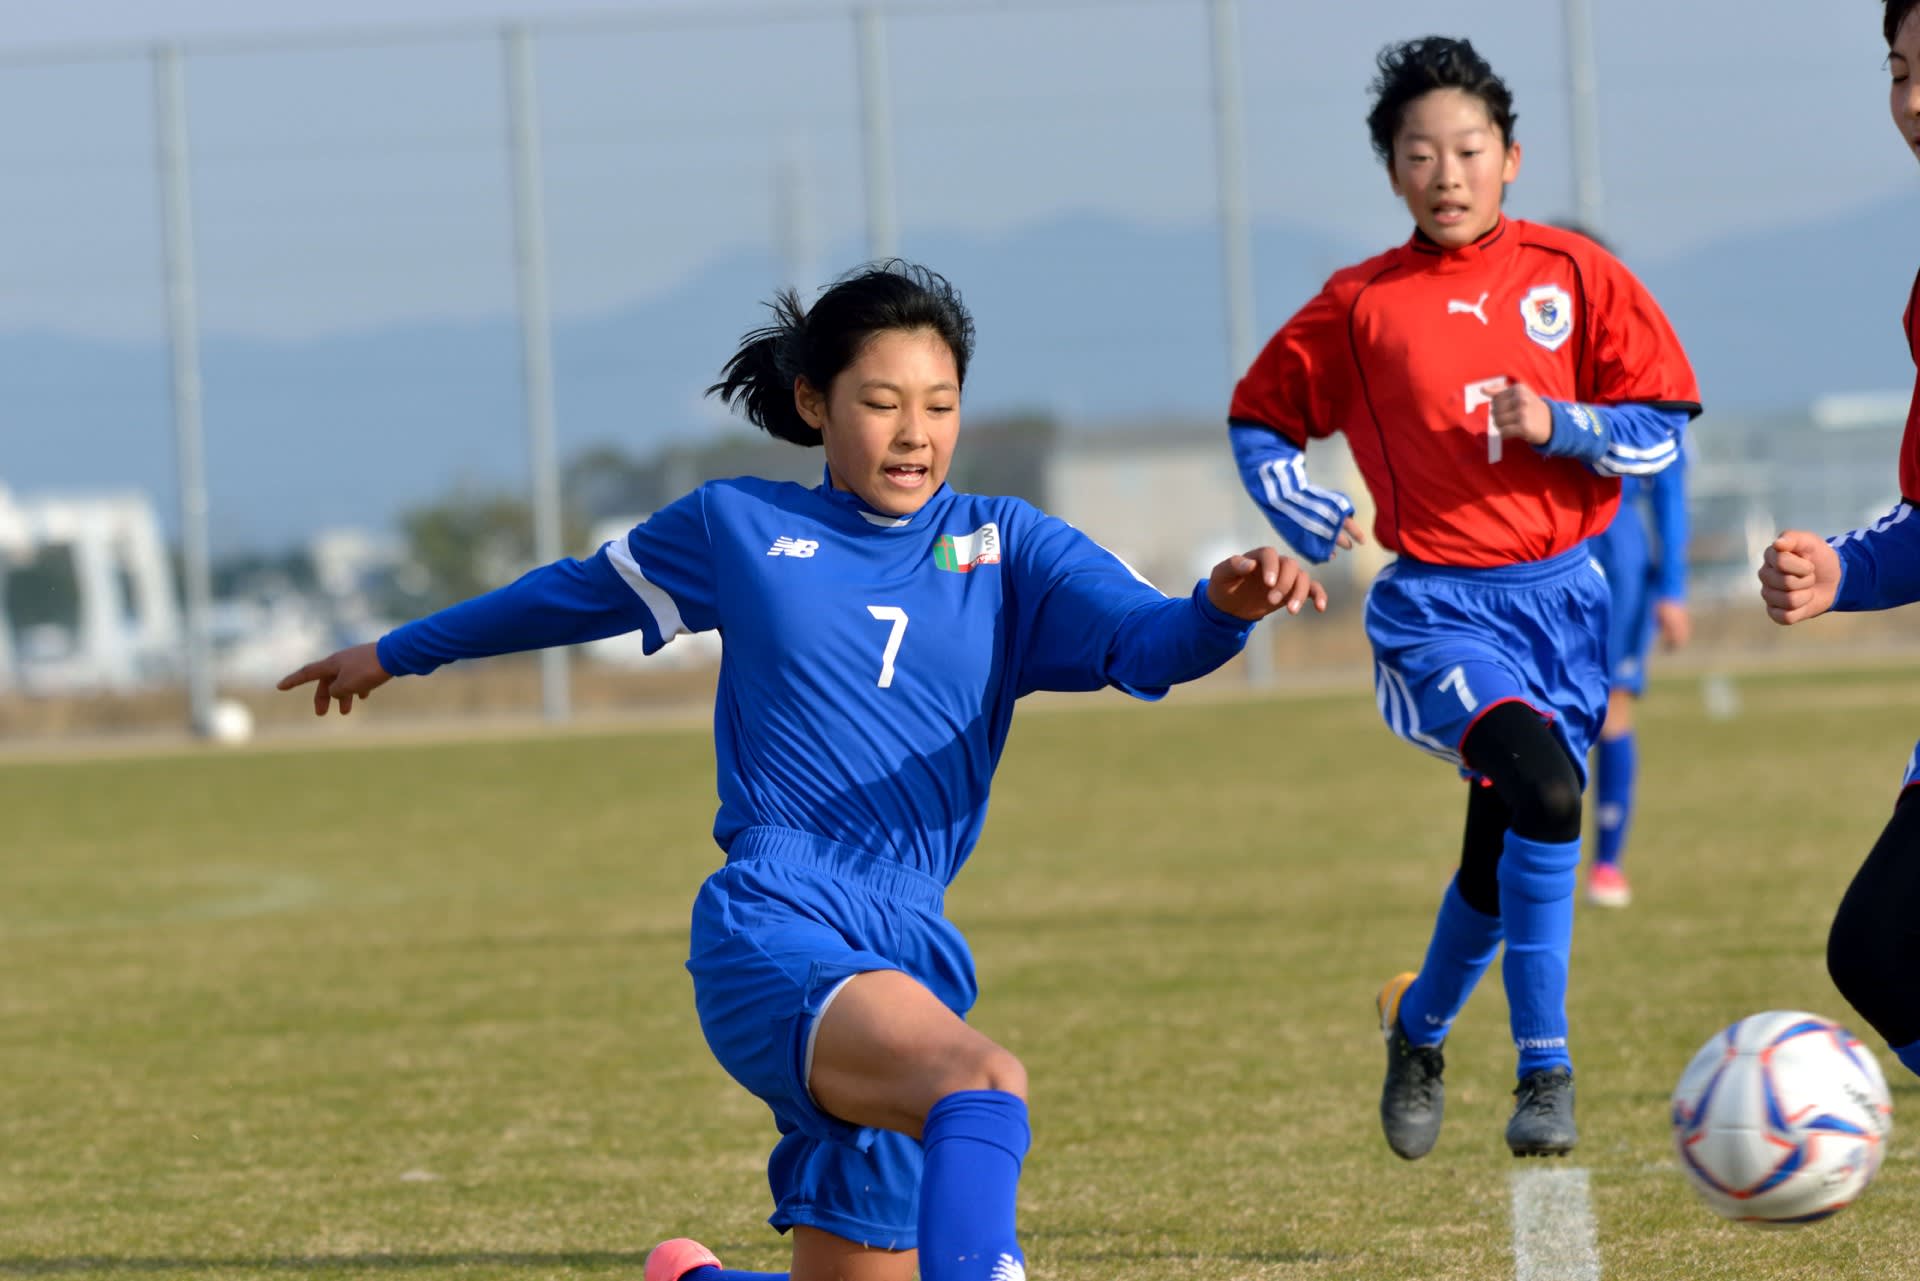 愛知県小学生女子サッカー選手権大会 Mickeyの徒然なるままに